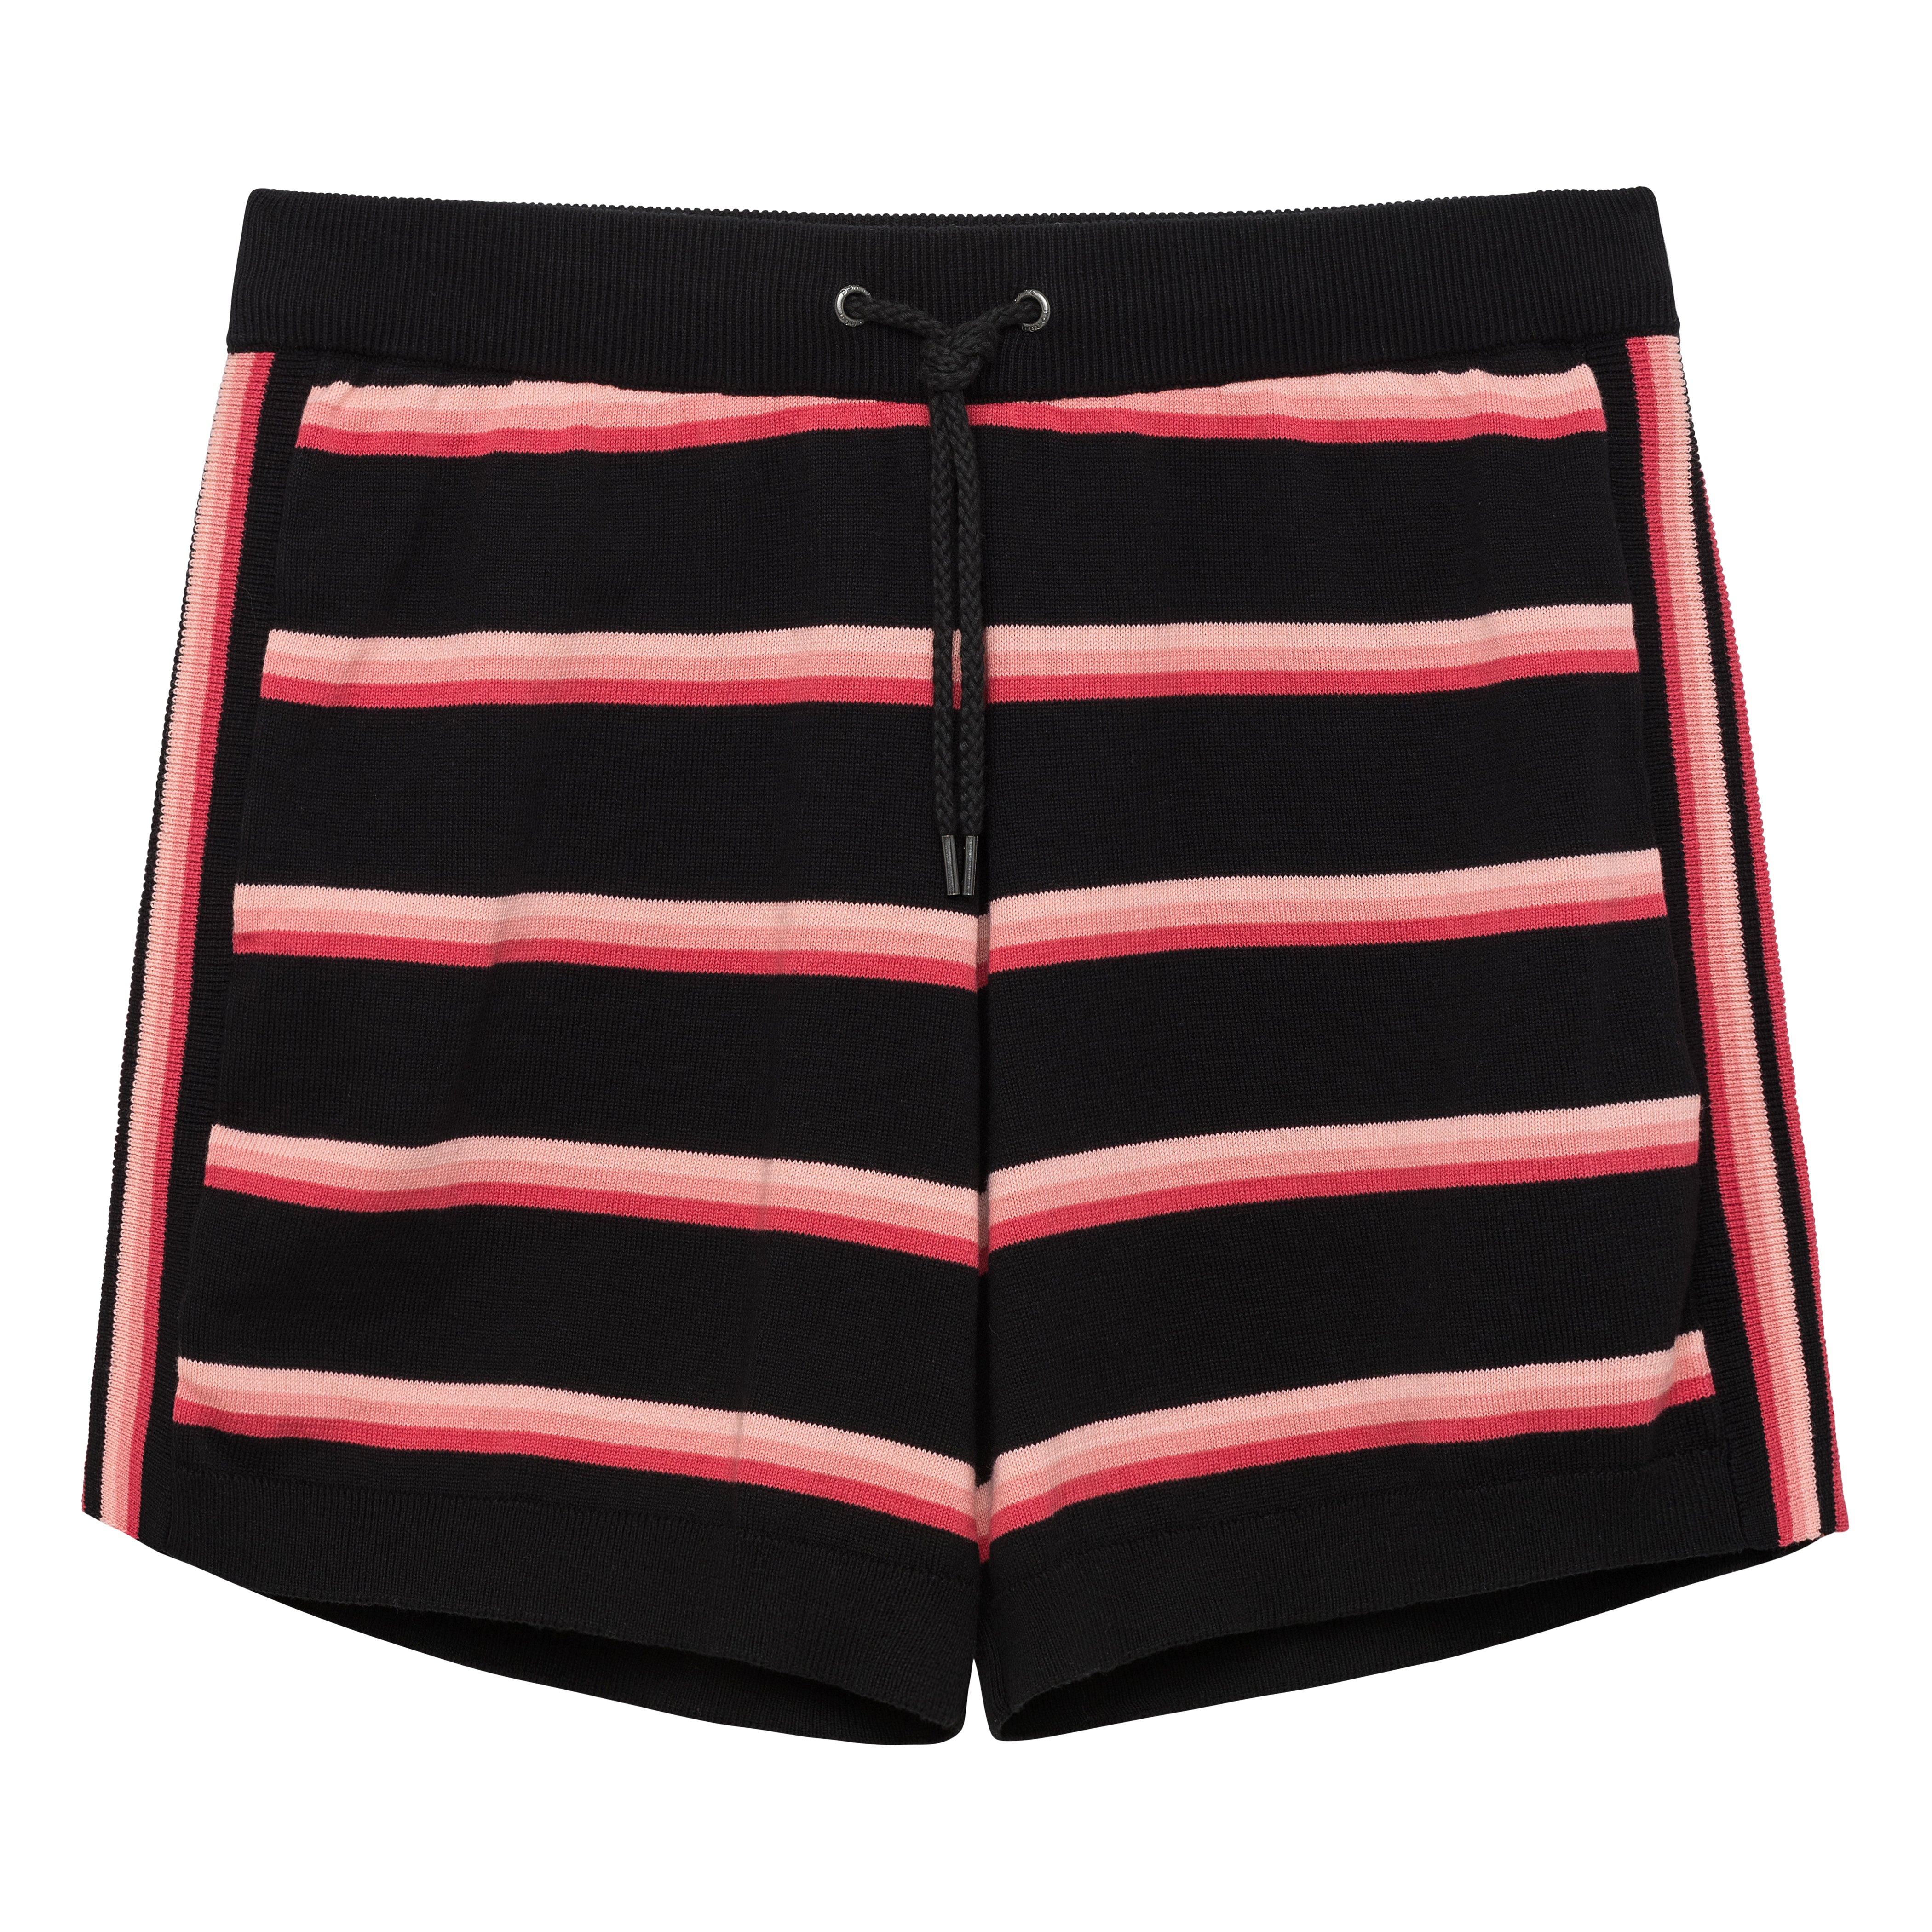 SAVE 70%- Black Dahlia Knit Cabana Short